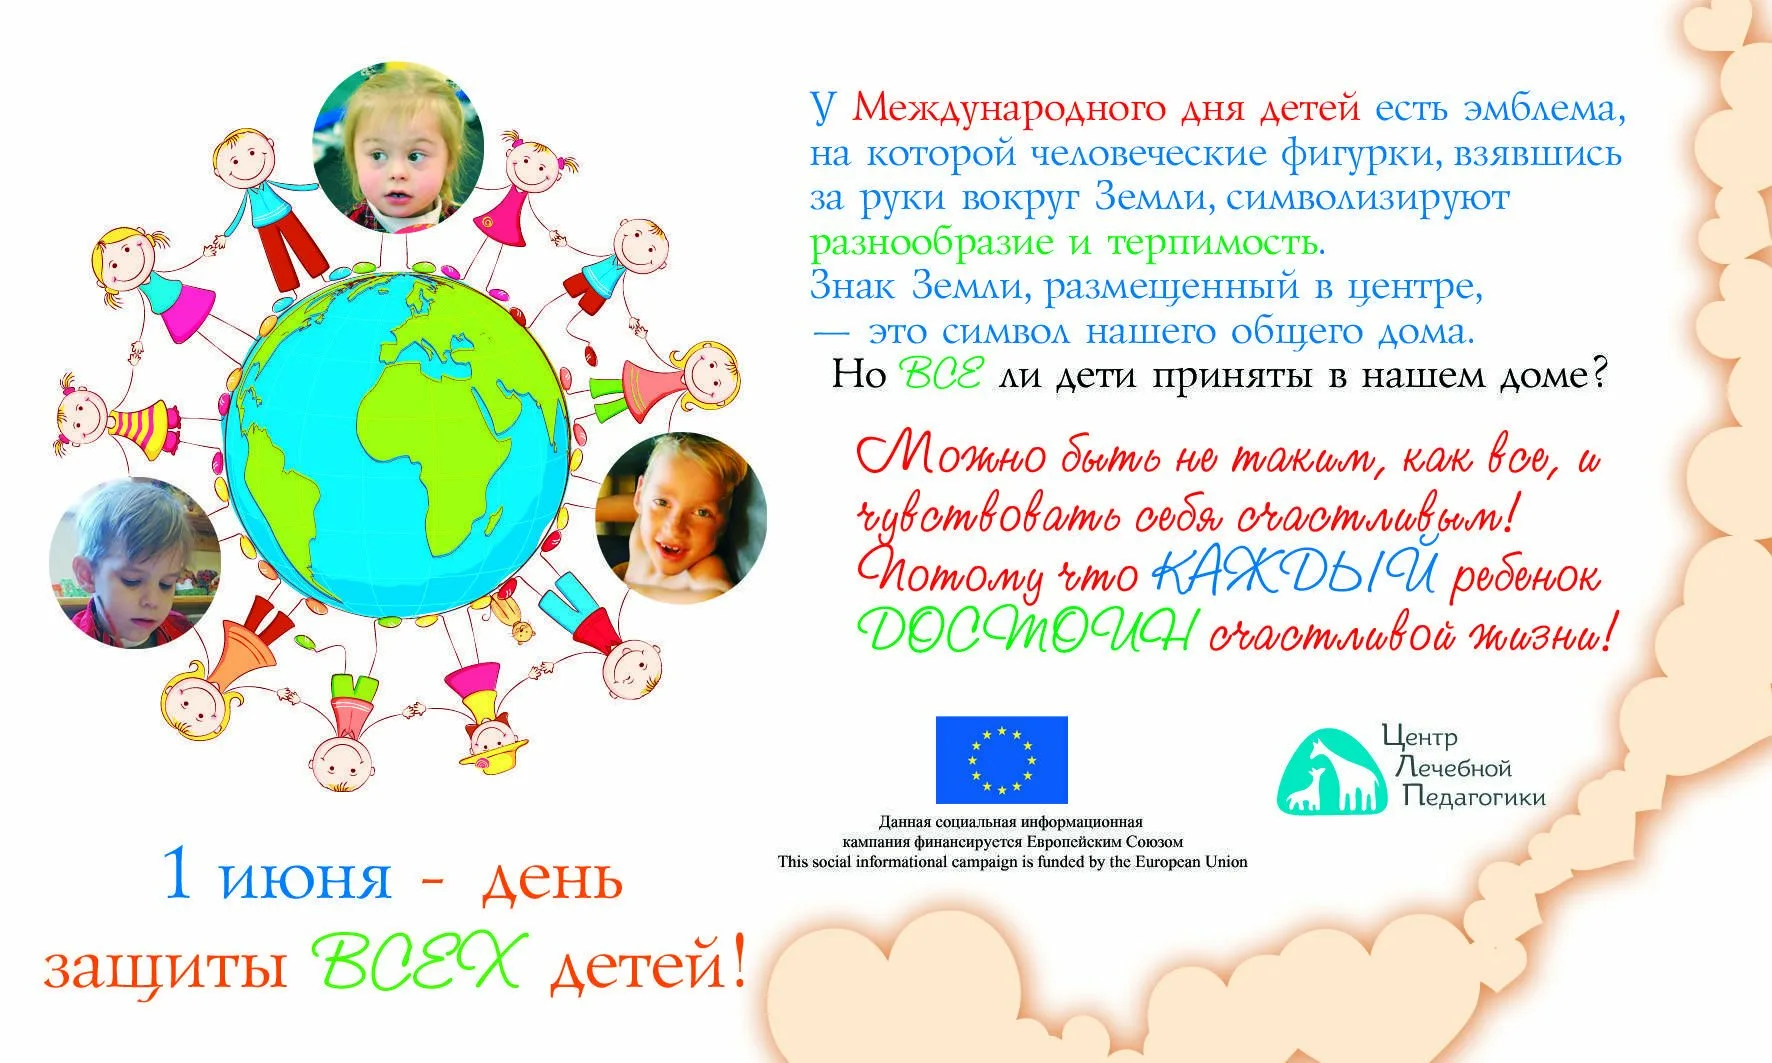 Международный день защиты детей. С днем защиты детей поздравление. Газета ко Дню защиты детей. Международный день защиты детей поздравление.